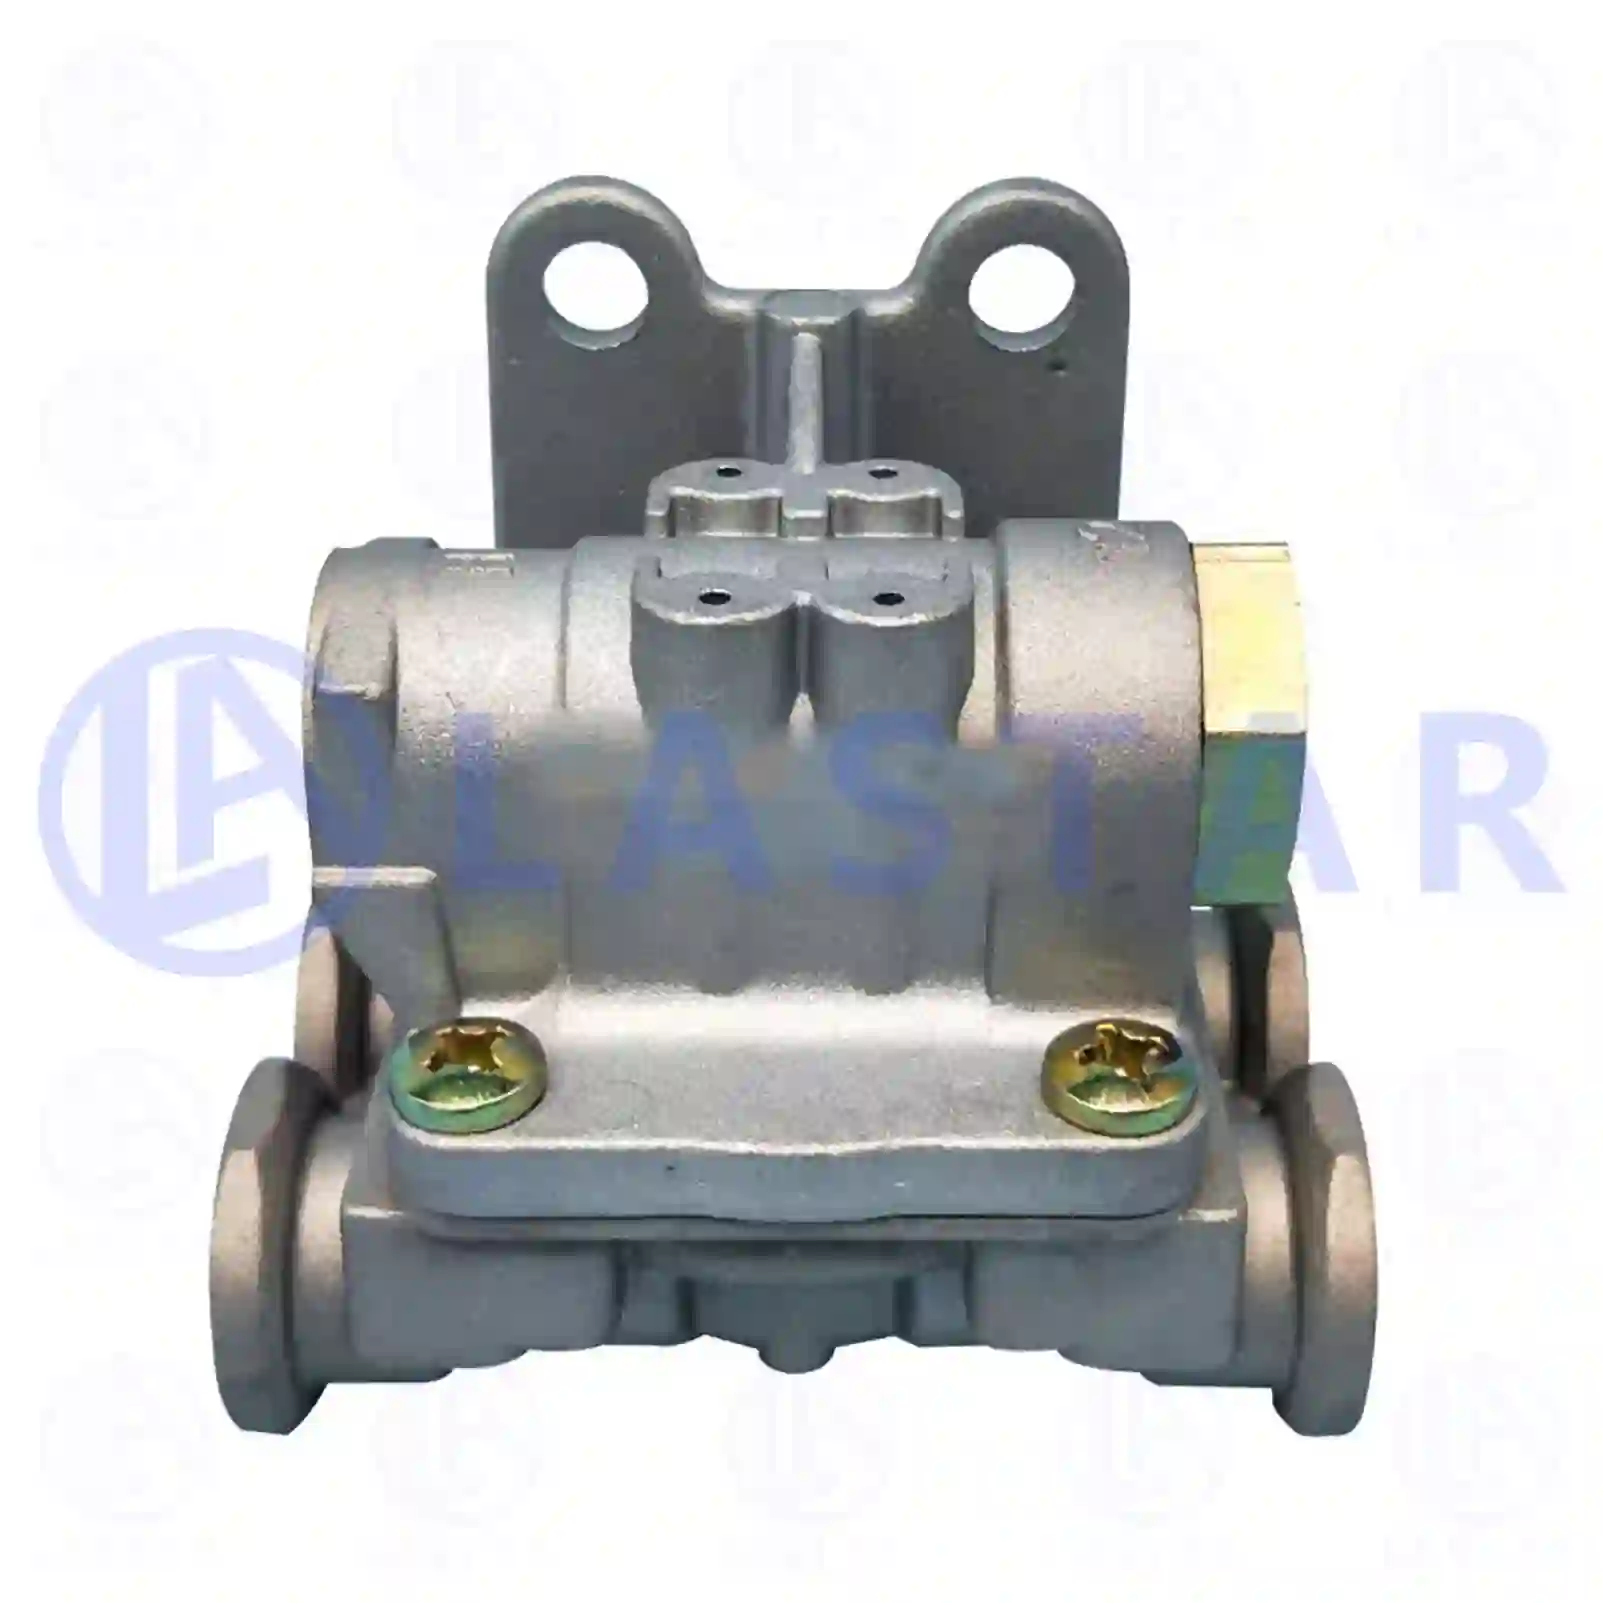  Quick release valve || Lastar Spare Part | Truck Spare Parts, Auotomotive Spare Parts